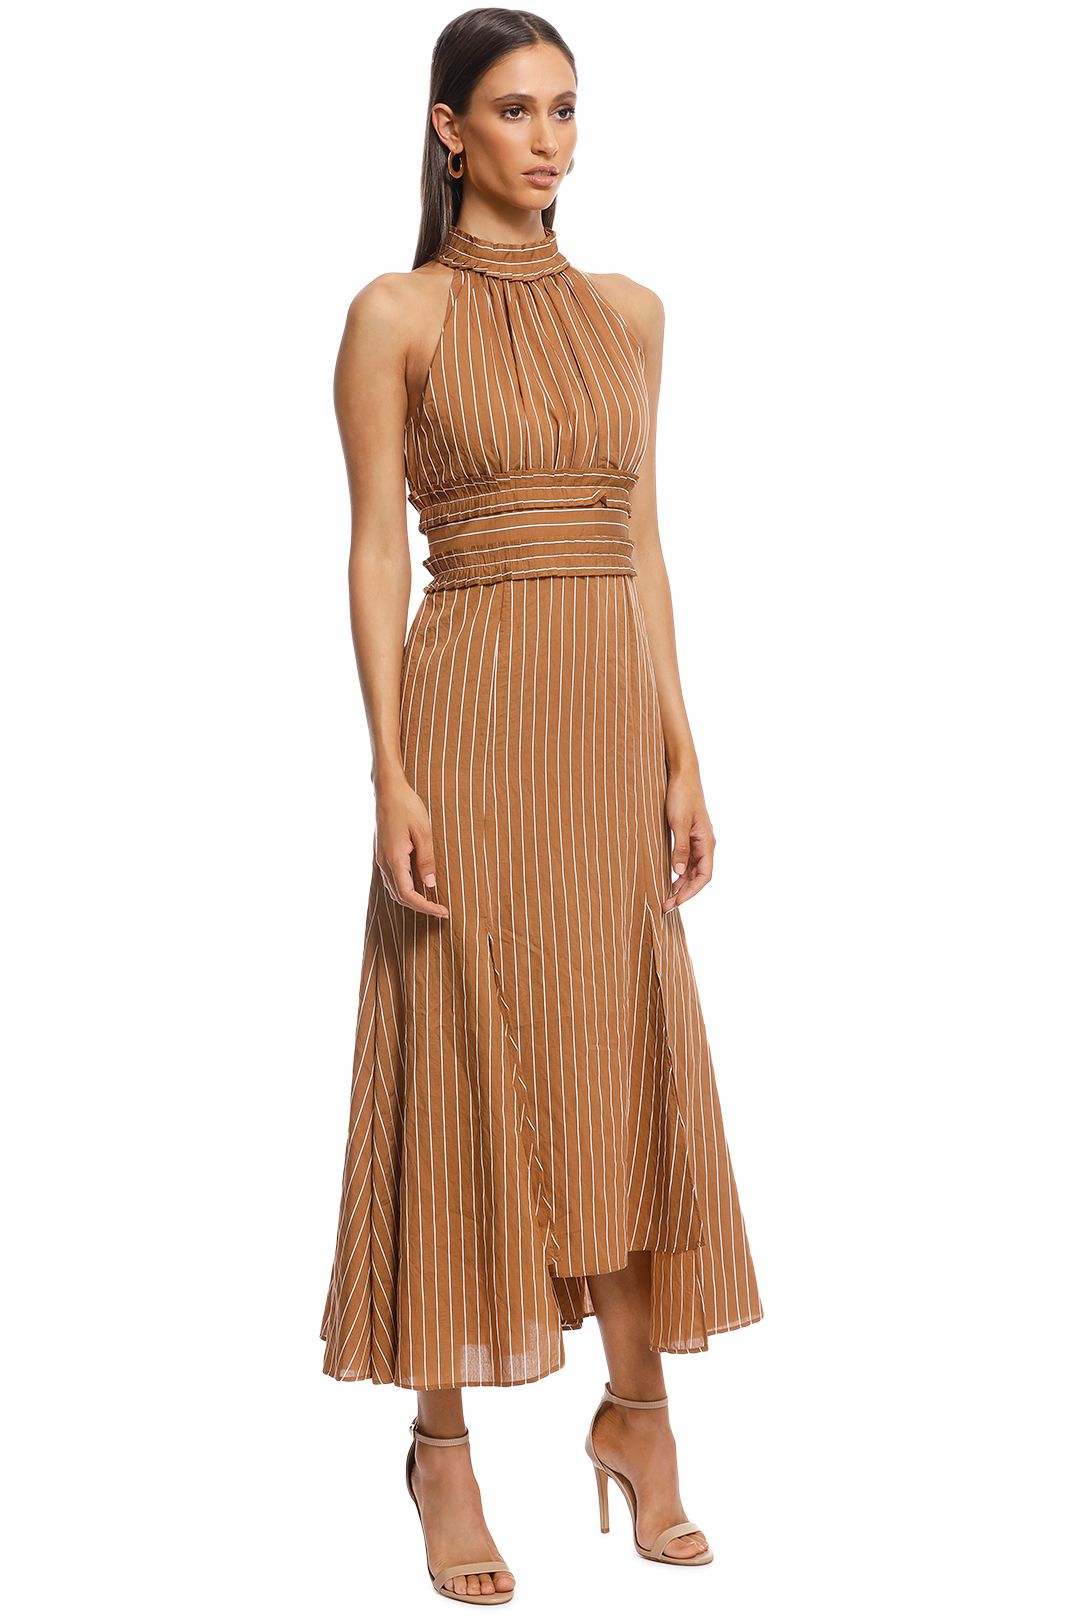 CMEO Collective - Suffuse Midi Dress - Tan Stripe - Side